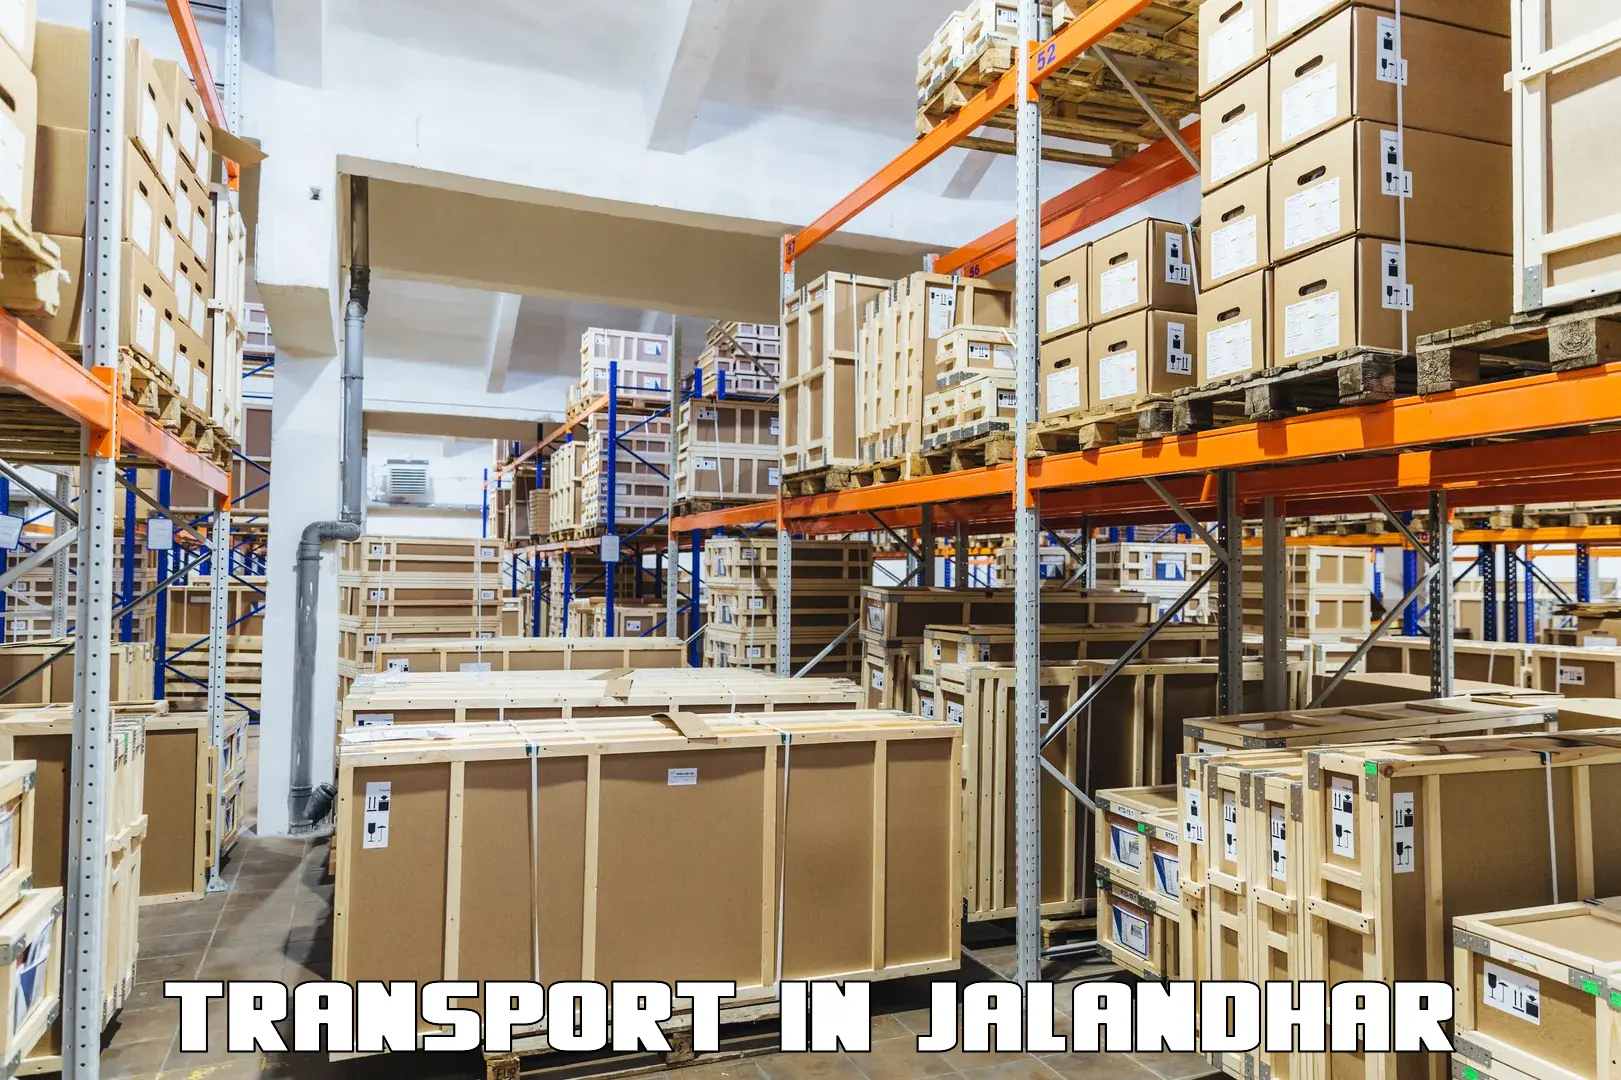 All India transport service in Jalandhar